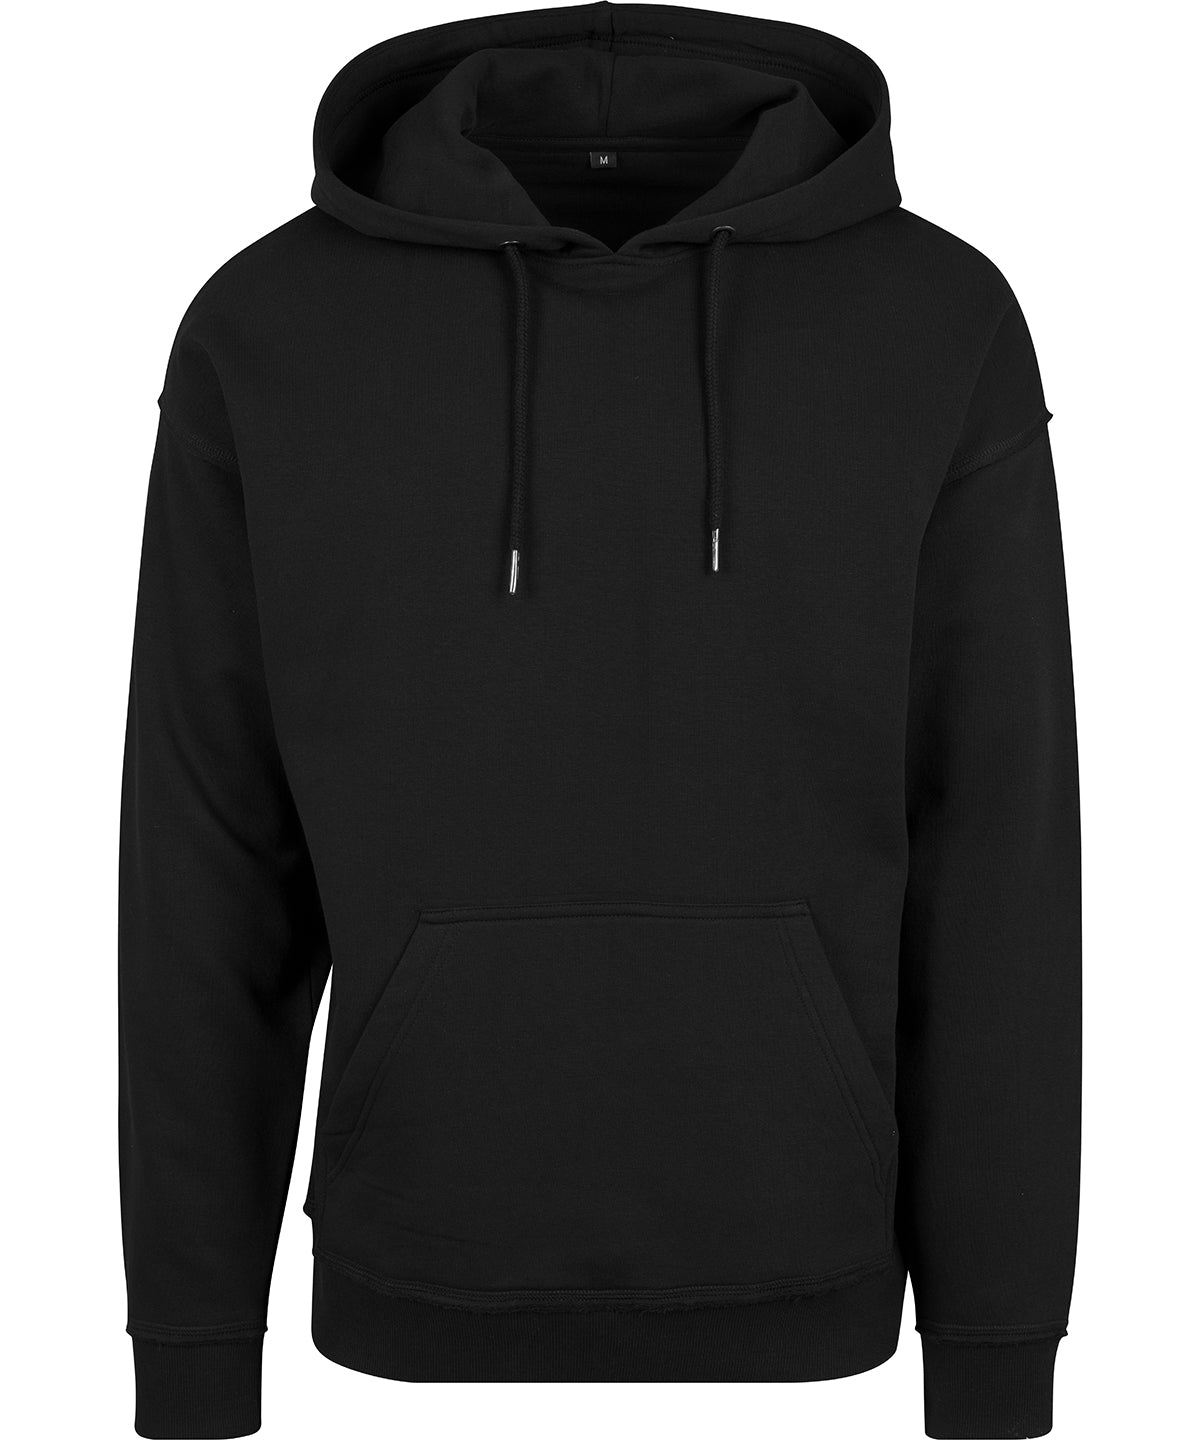 Personalised Hoodies - Black Build Your Brand Oversize hoodie